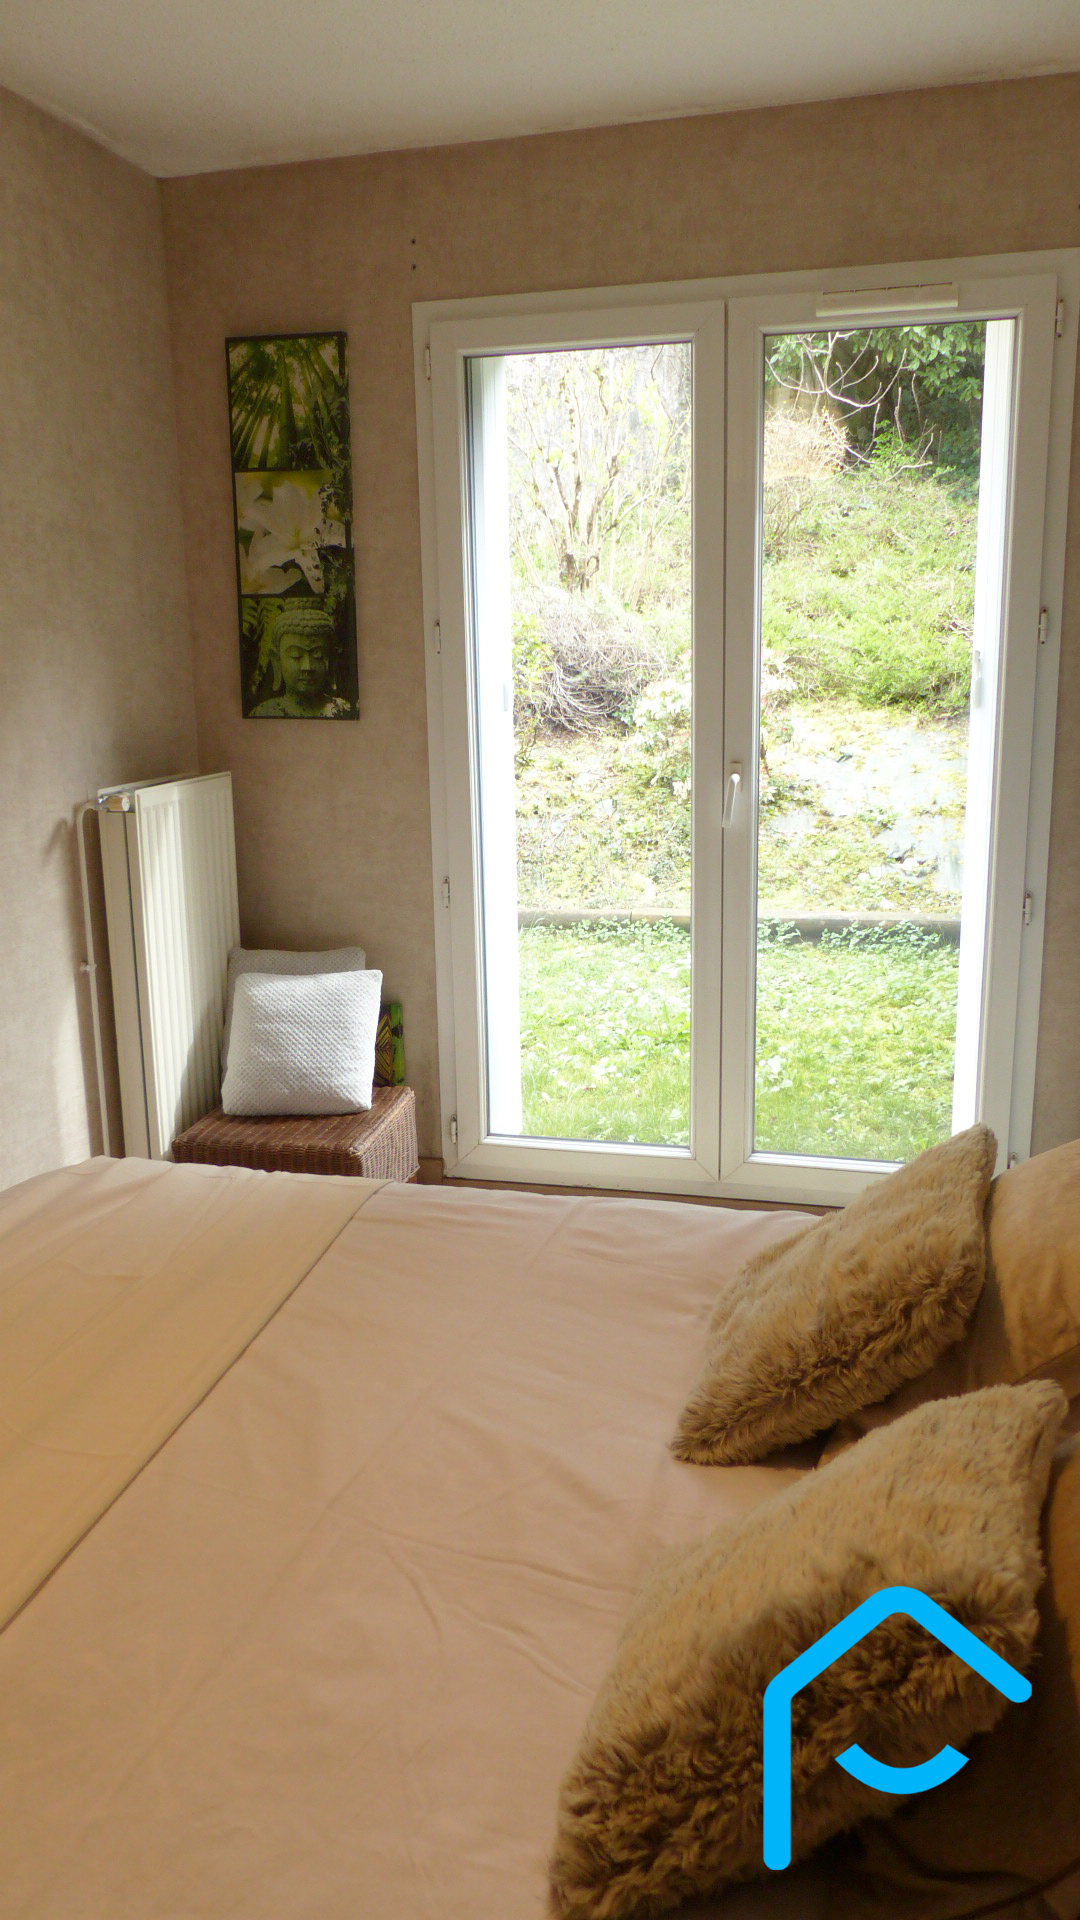 A vendre appartement rez de jardin Savoie Chambéry vue 7